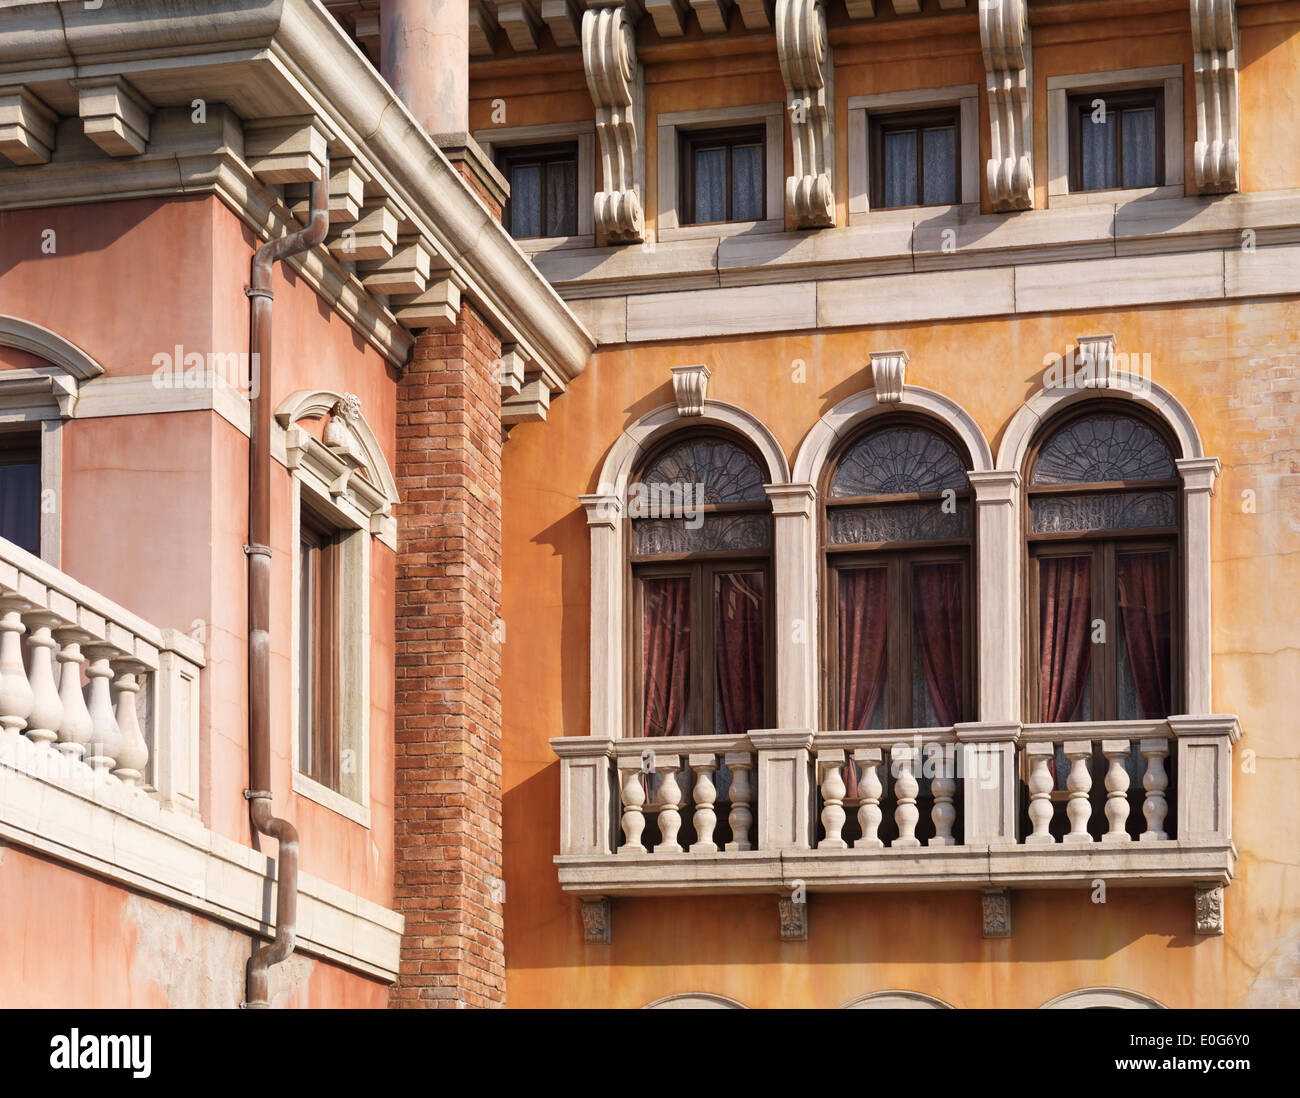 Fenêtres d'une maison construite dans le style architectural gothique vénitien Banque D'Images